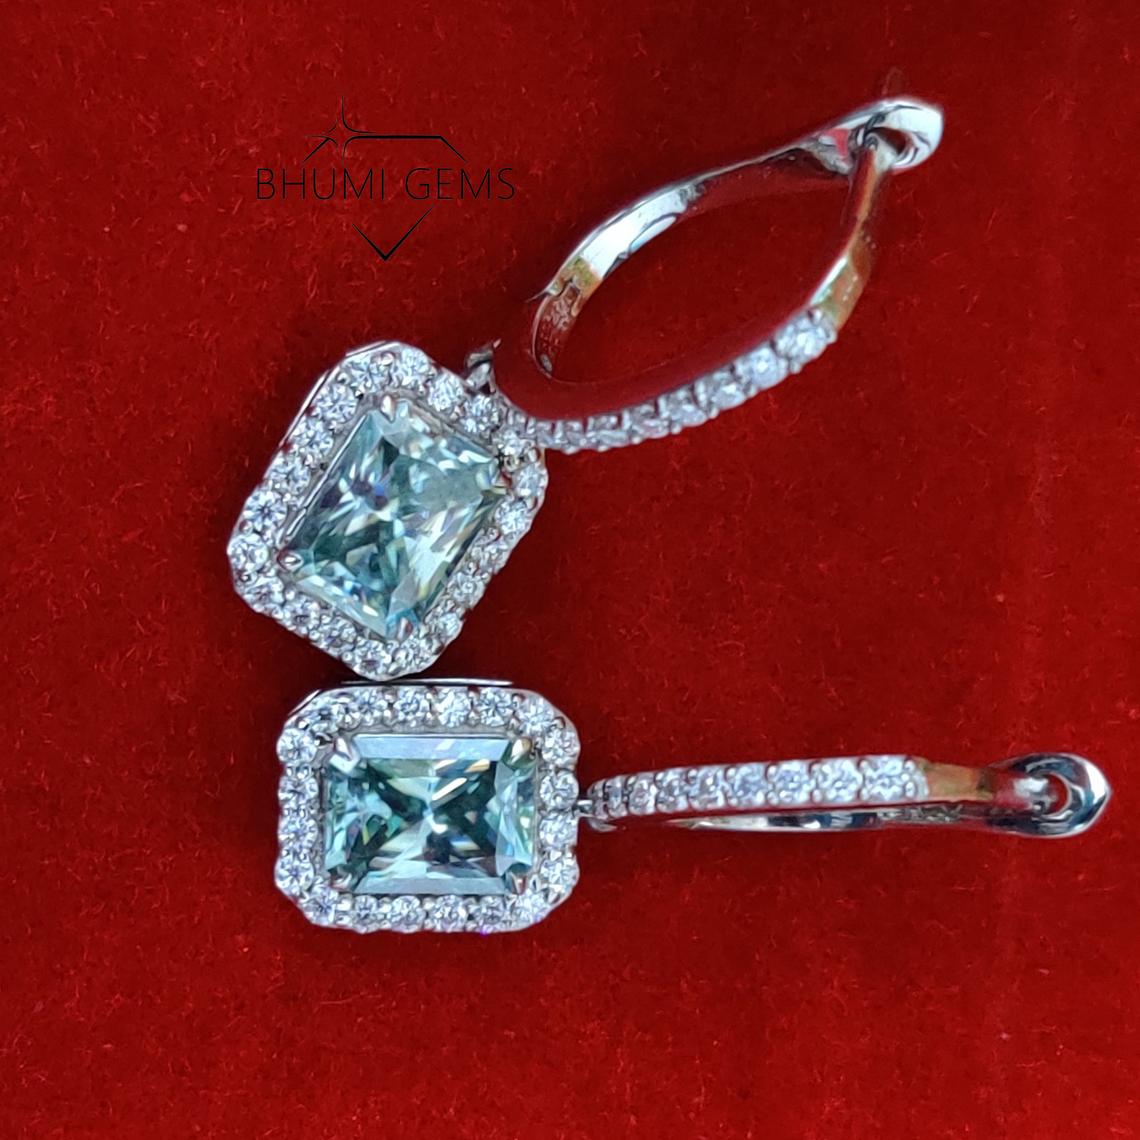 Moissanite diamond Earrings | Dark Green Earrings | VVS1 Clarity